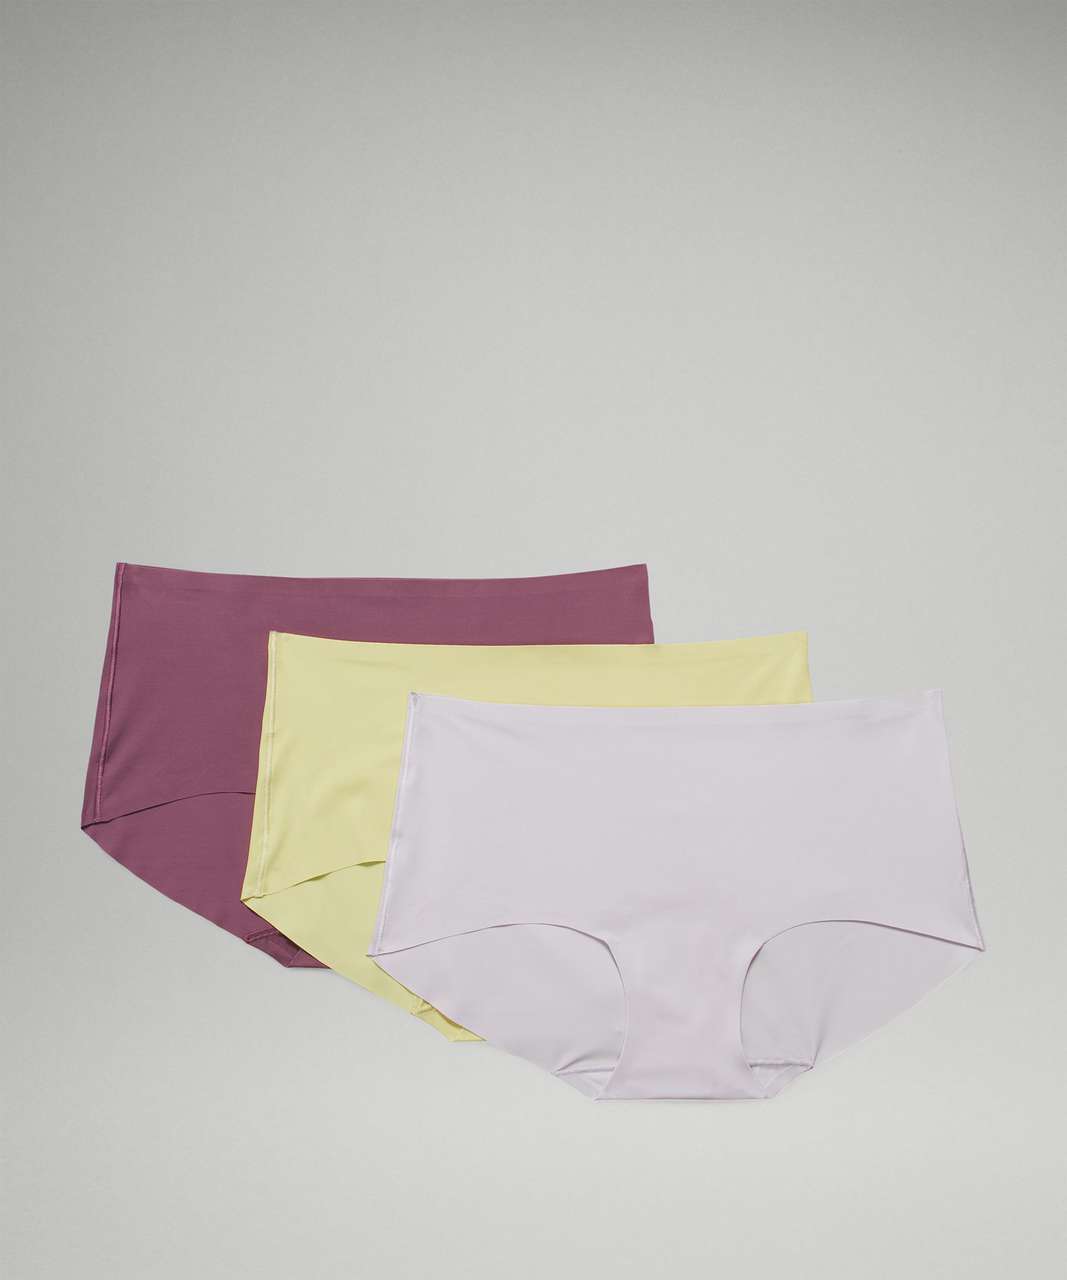 Women's 3-Pack Seamless High Rise Boyshort Underwear, Underwear